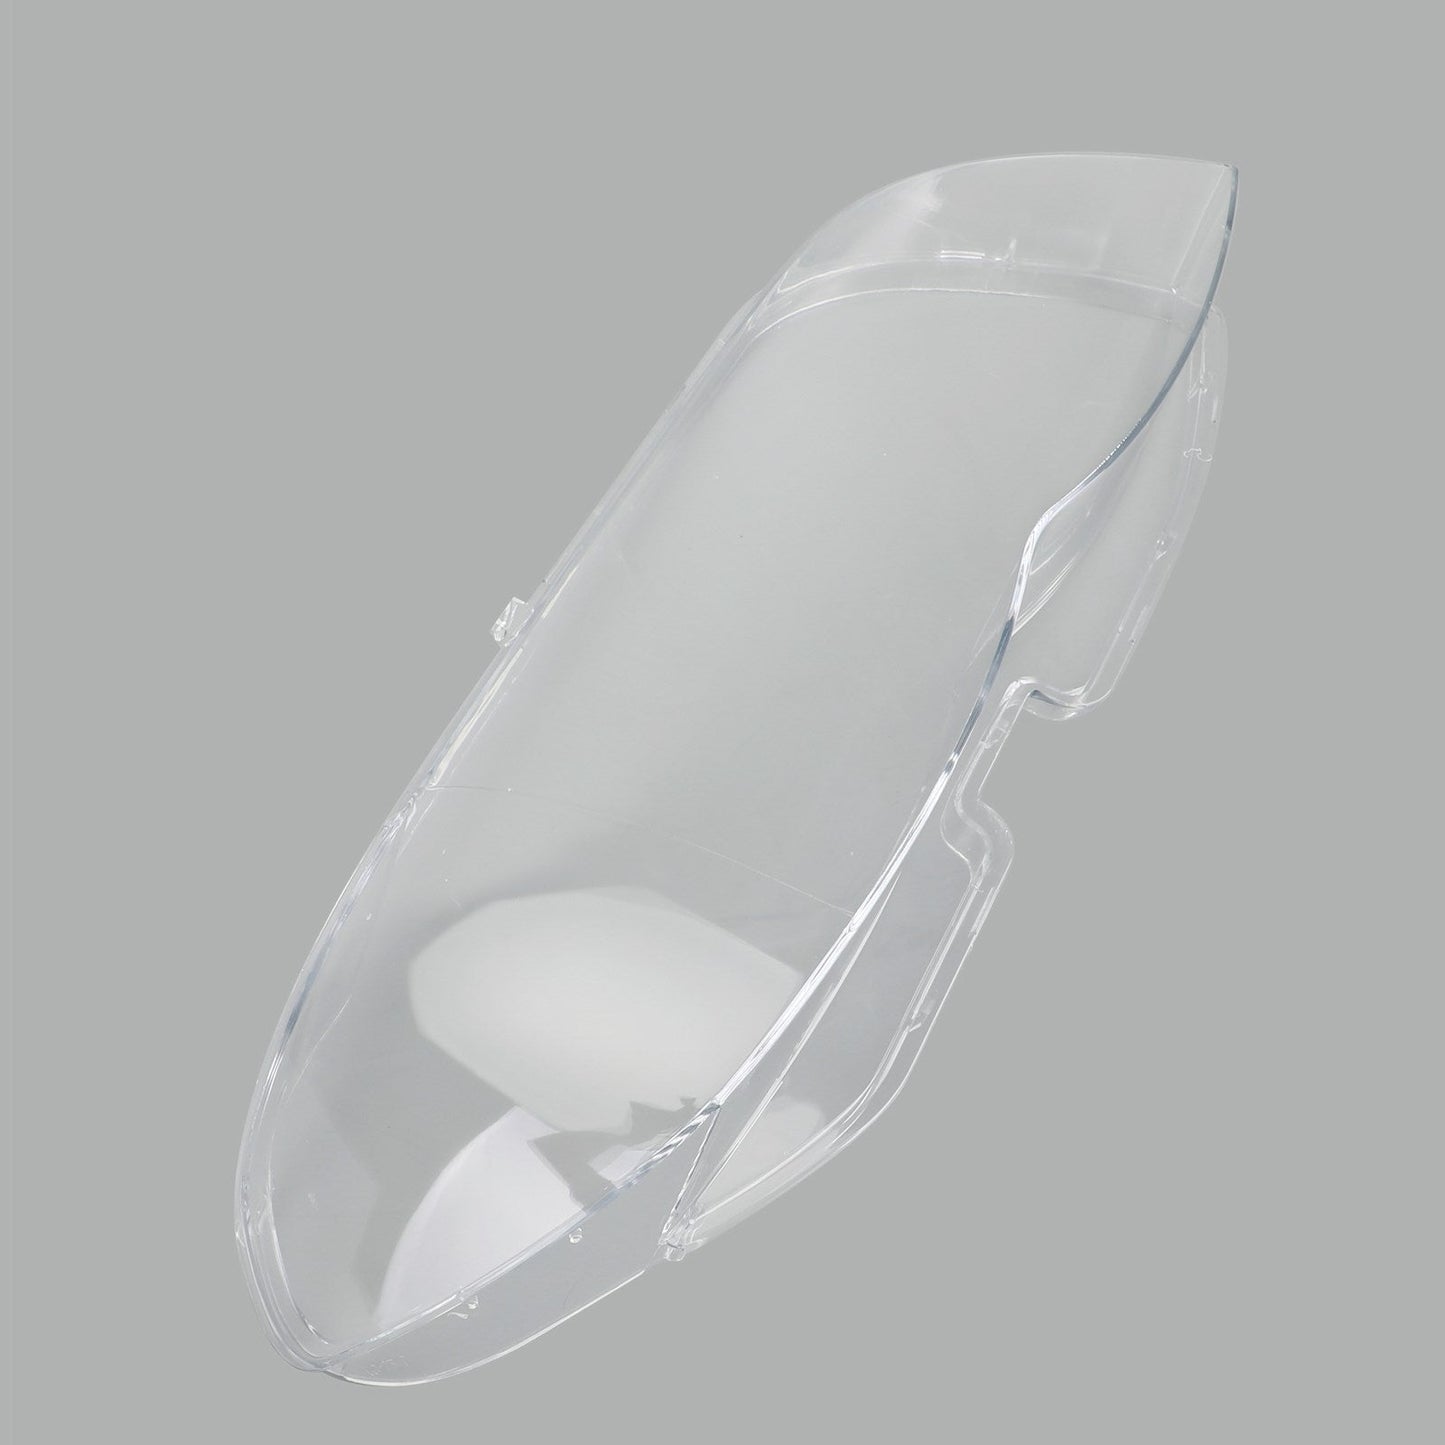 Left Headlight Shell Headlight Lens Plastic Cover For BMW X5 E53 2004-2006